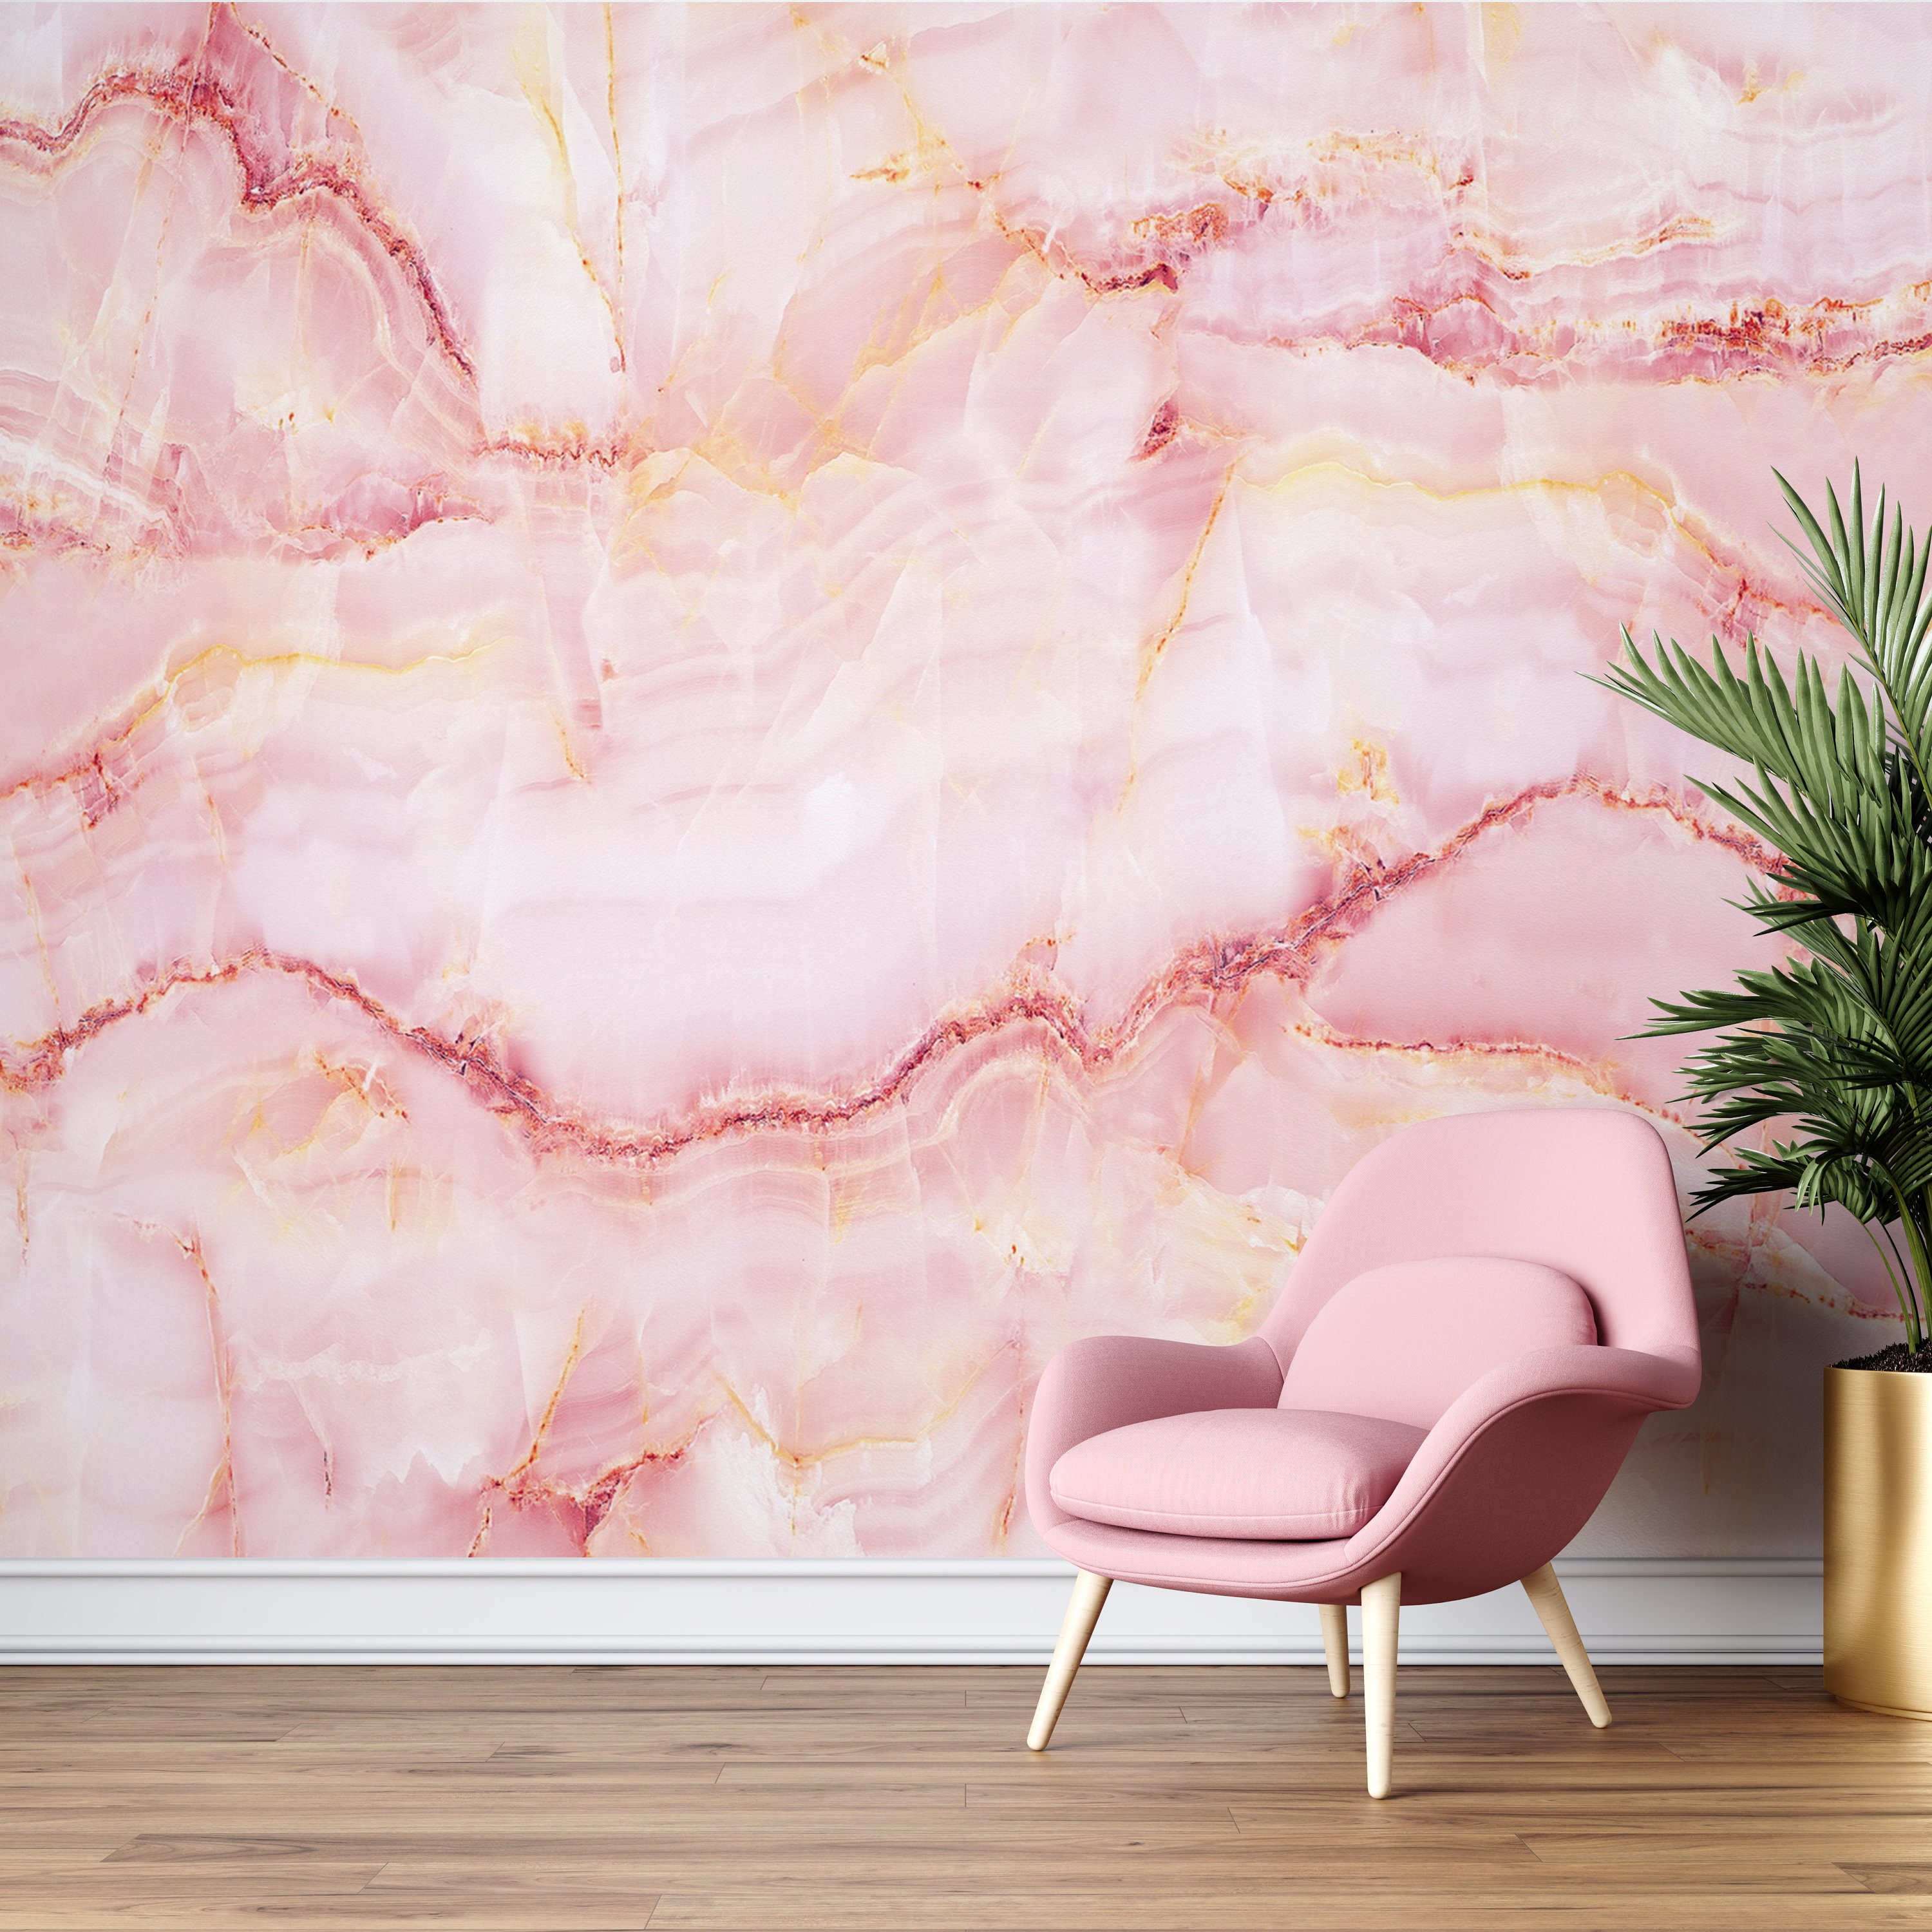 Bạn là người thích trang trí và thích màu hồng? Vậy giấy dán tường đá hồng là lựa chọn hoàn hảo để trang trí căn nhà của bạn. Hãy mua giấy dán tường đá hồng trực tuyến ngay hôm nay để có được không gian bếp đẹp và sang trọng.